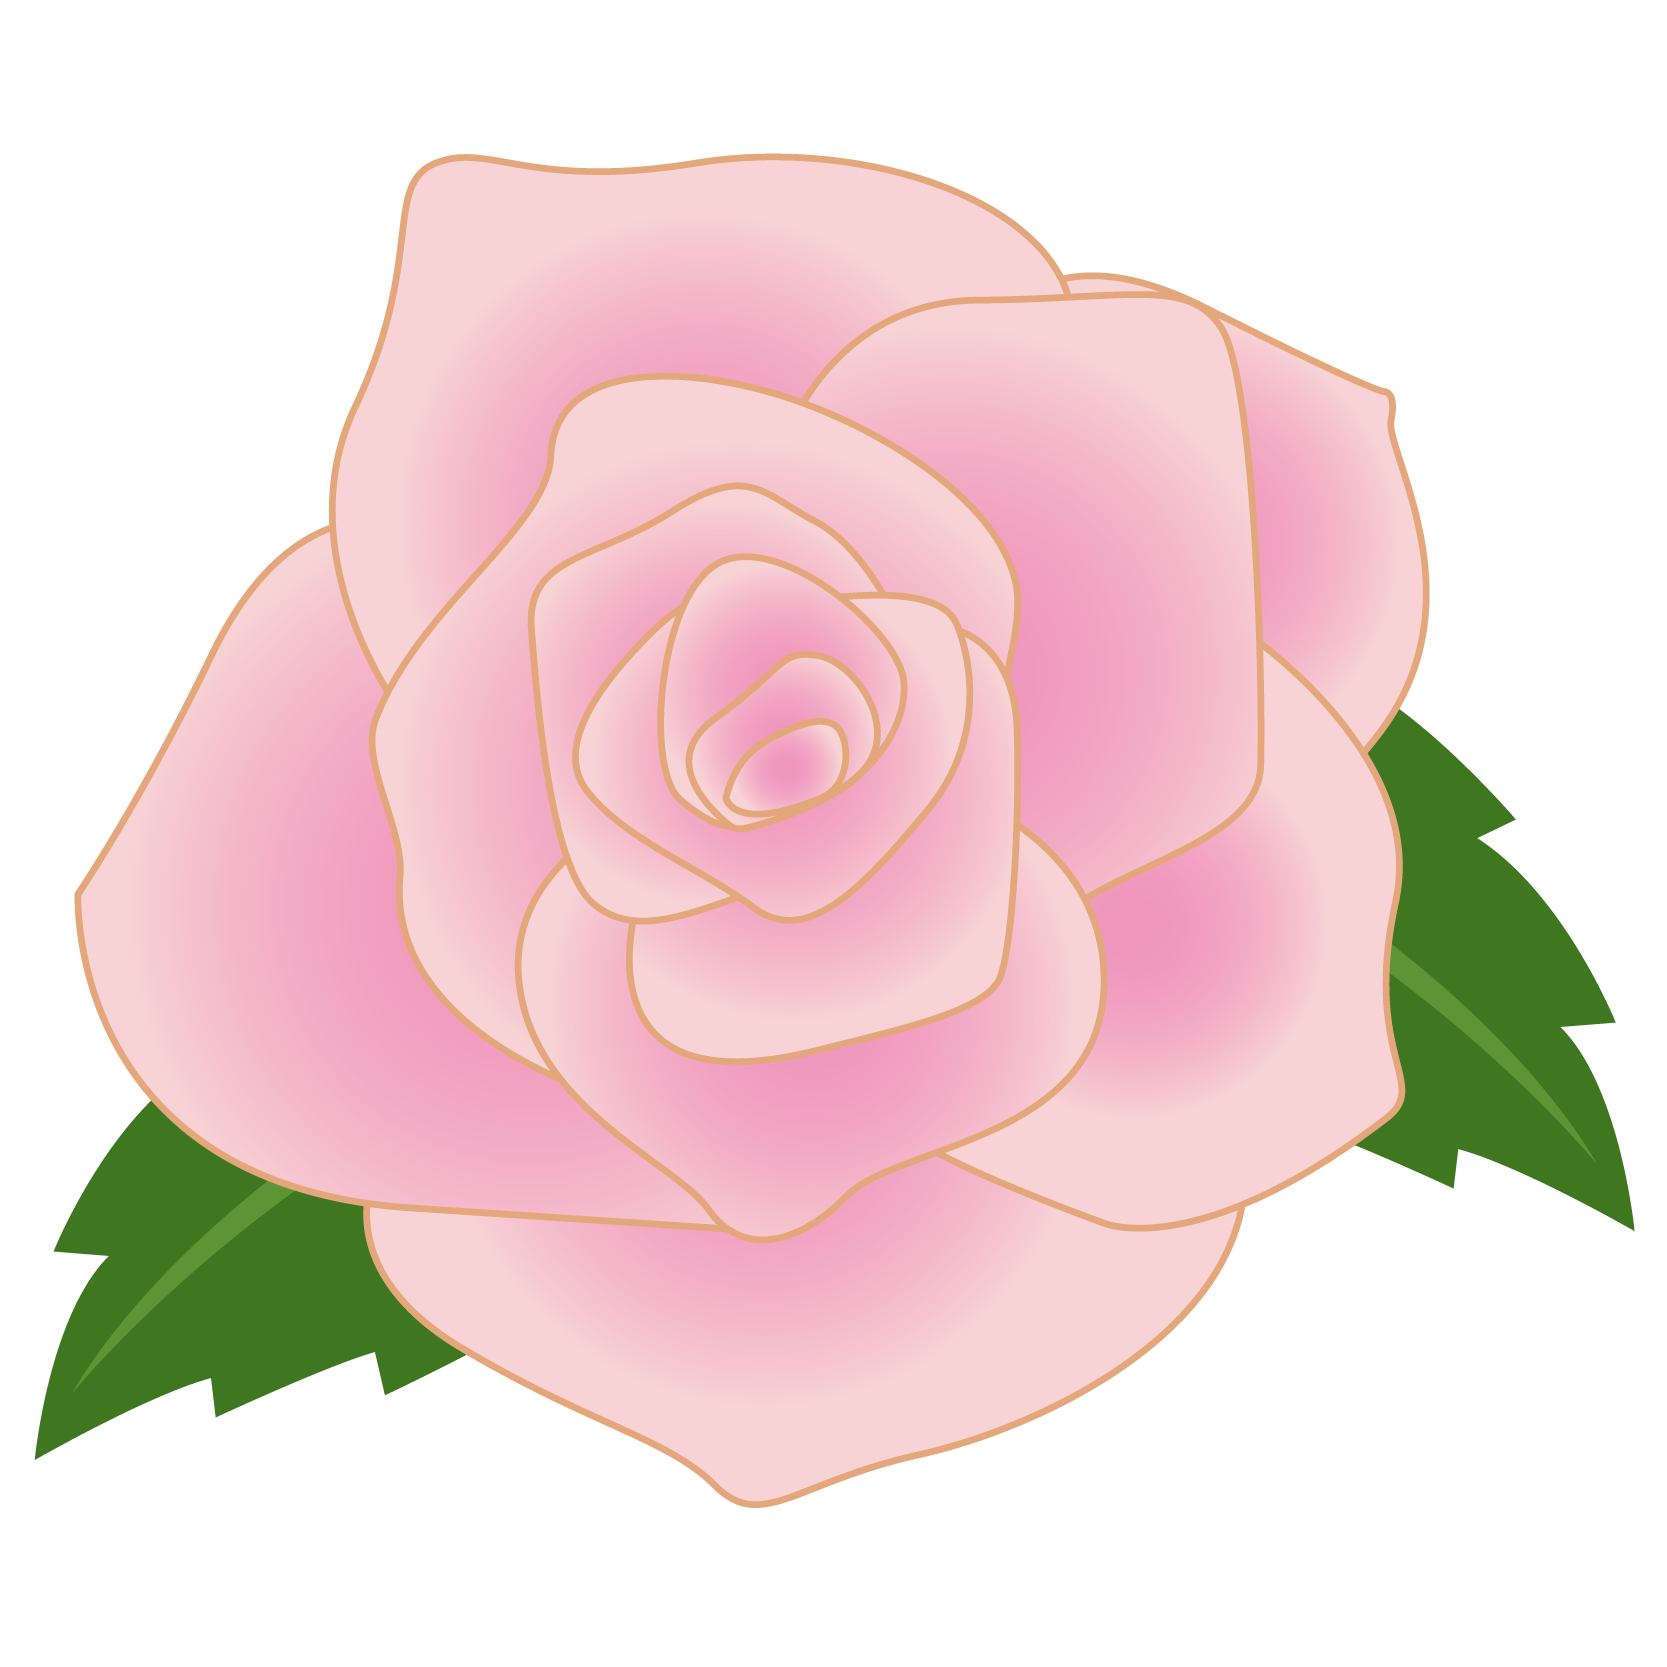 商用フリー 無料イラスト ピンクのバラの花 Rose07 商用ok フリー素材集 ナイスなイラスト